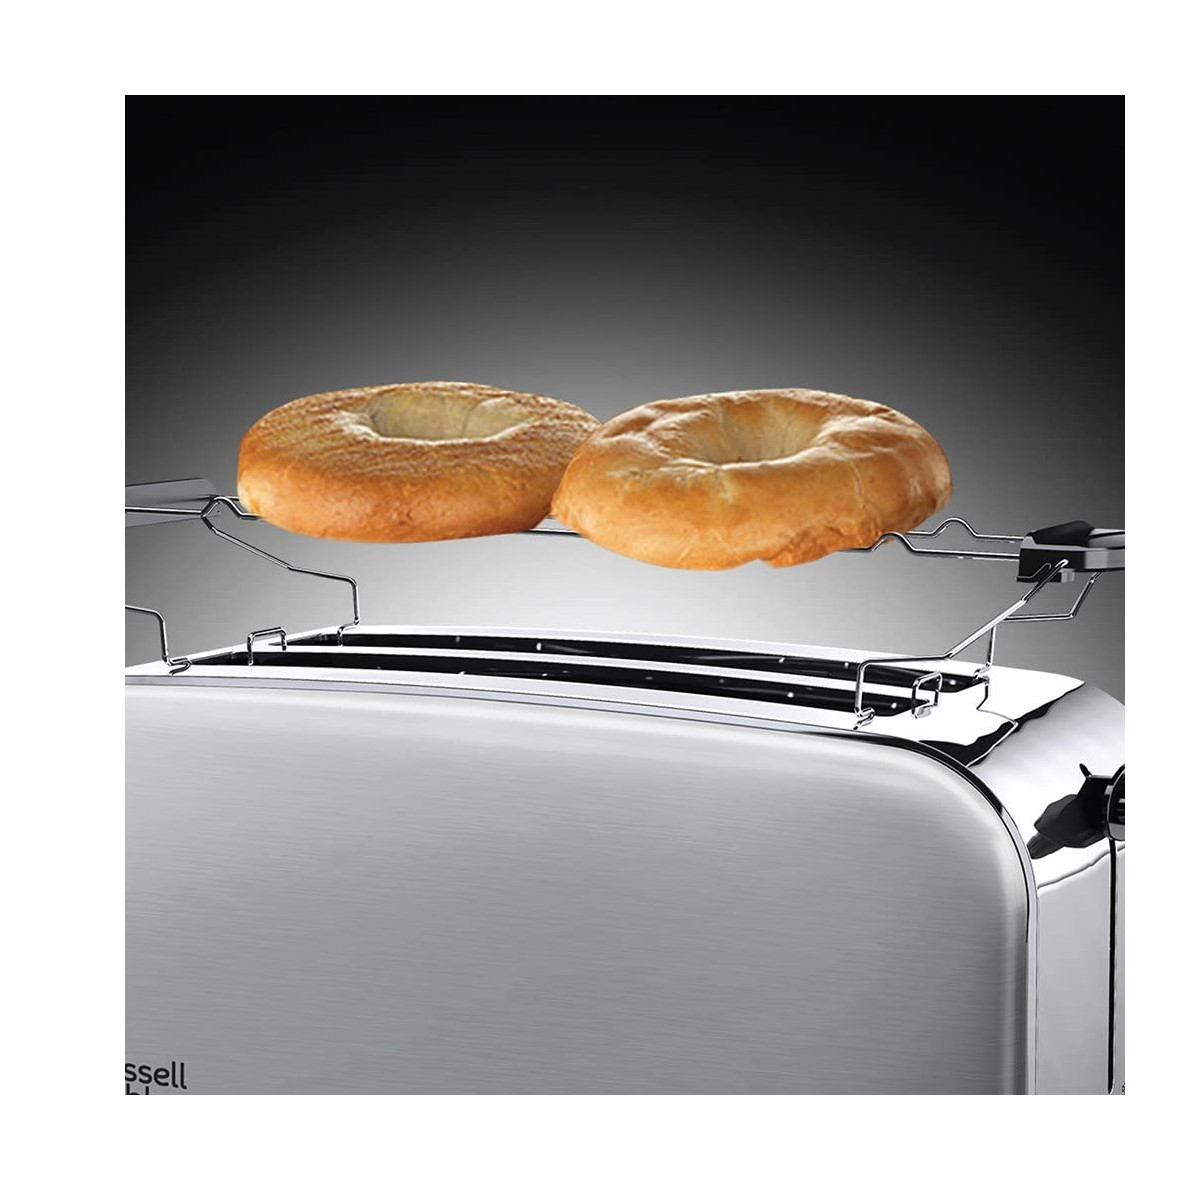 RUSSELL (1600 Silber Adventure Watt, HOBBS Schlitze: 23610-56 2) Toaster